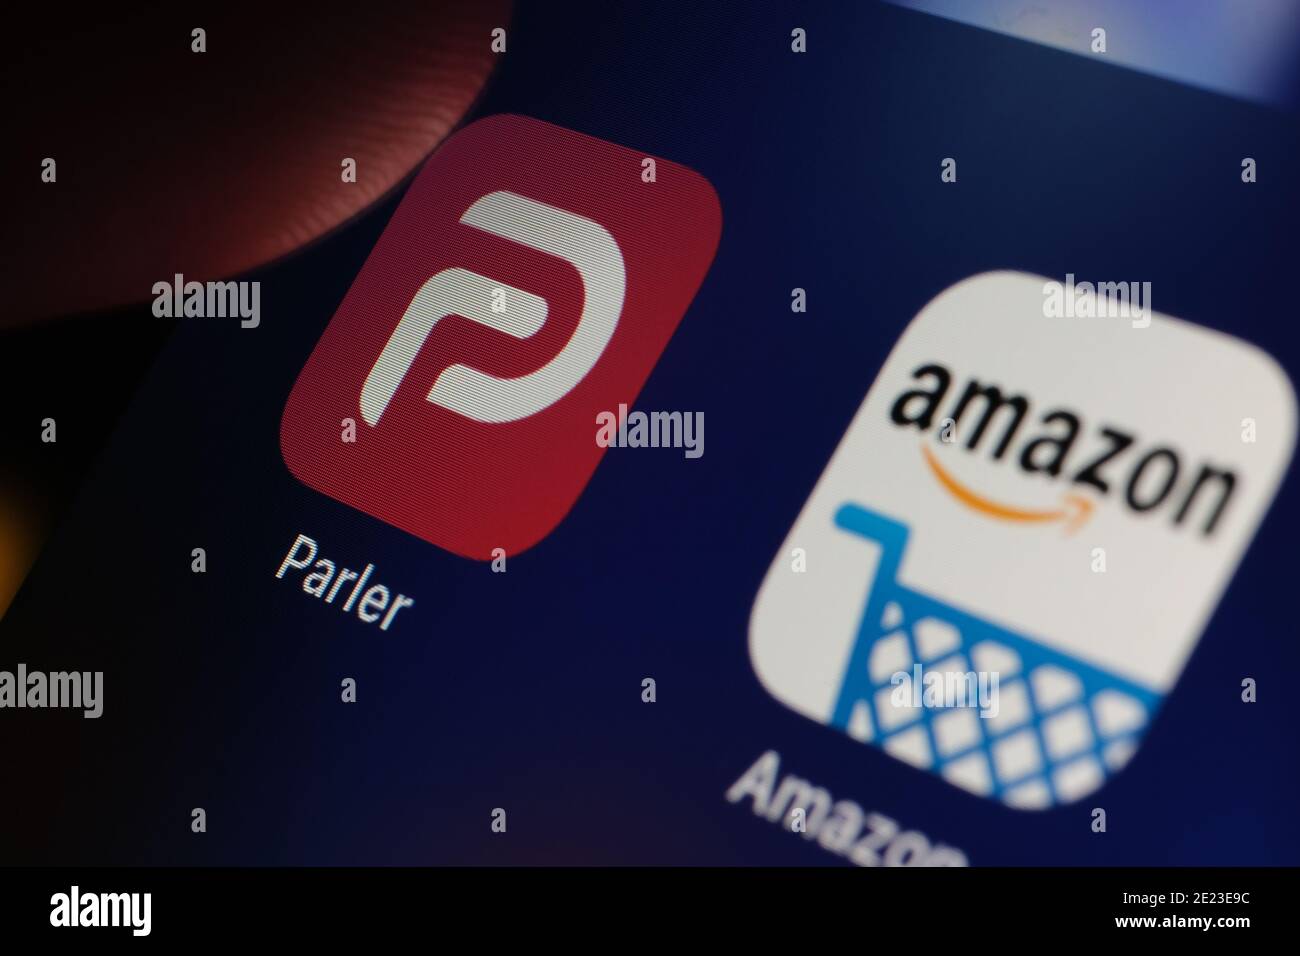 App Parler e Amazon visualizzate sullo schermo dell'iPad. Concetto. Parler è una piattaforma di social media vietata da Amazon AWS. Foto Stock